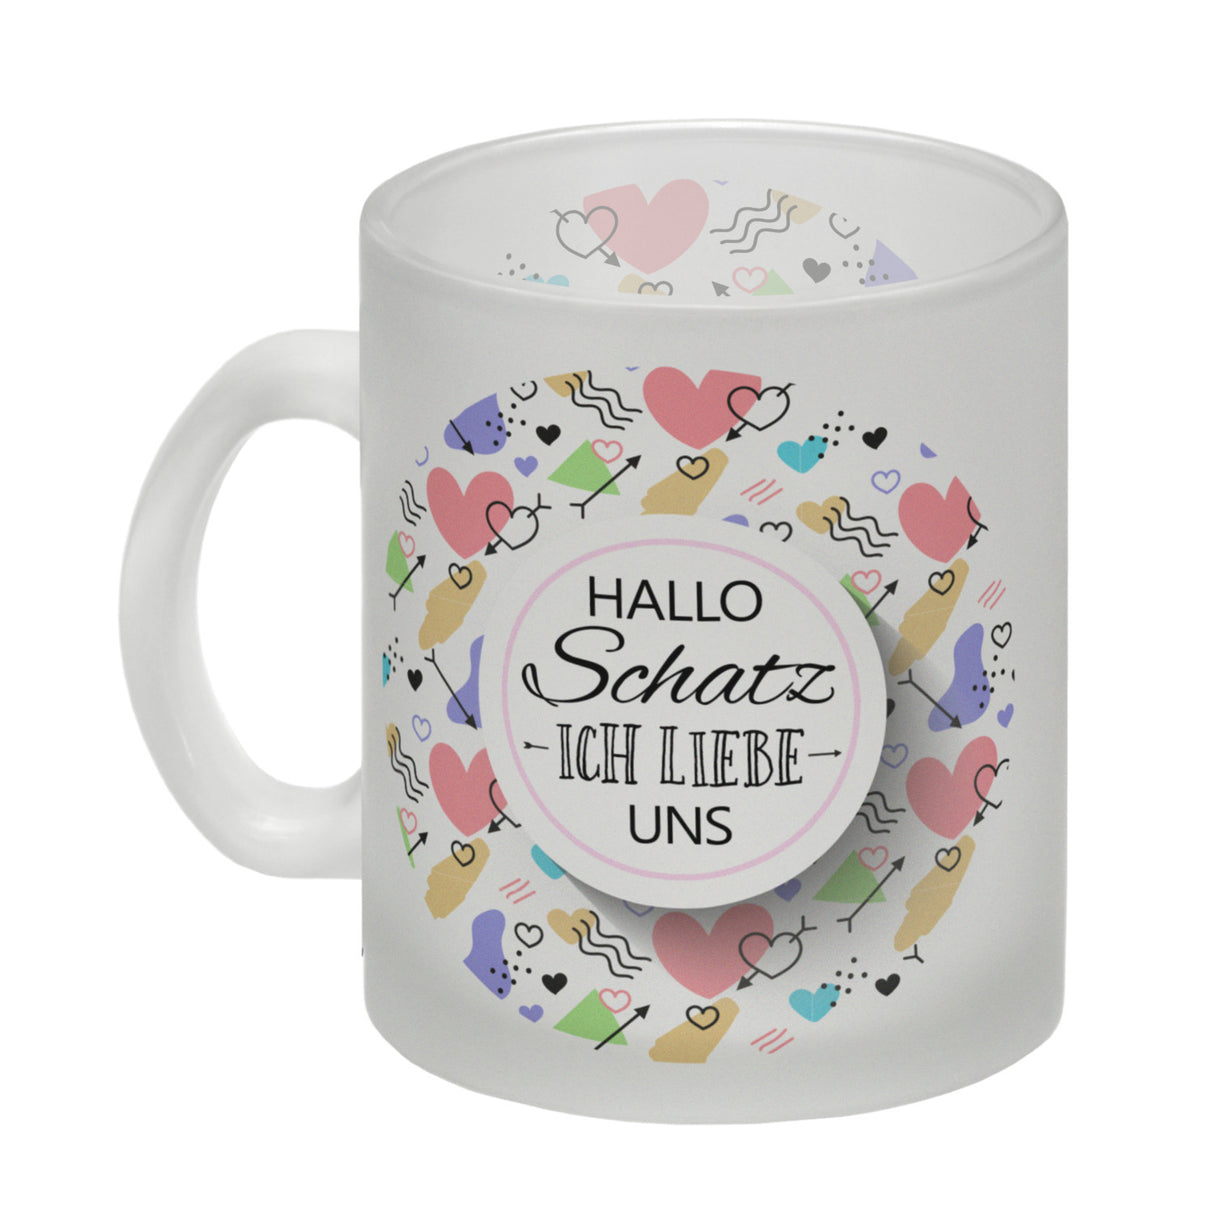 Kaffeebecher mit Spruch: Hallo Schatz ich liebe uns